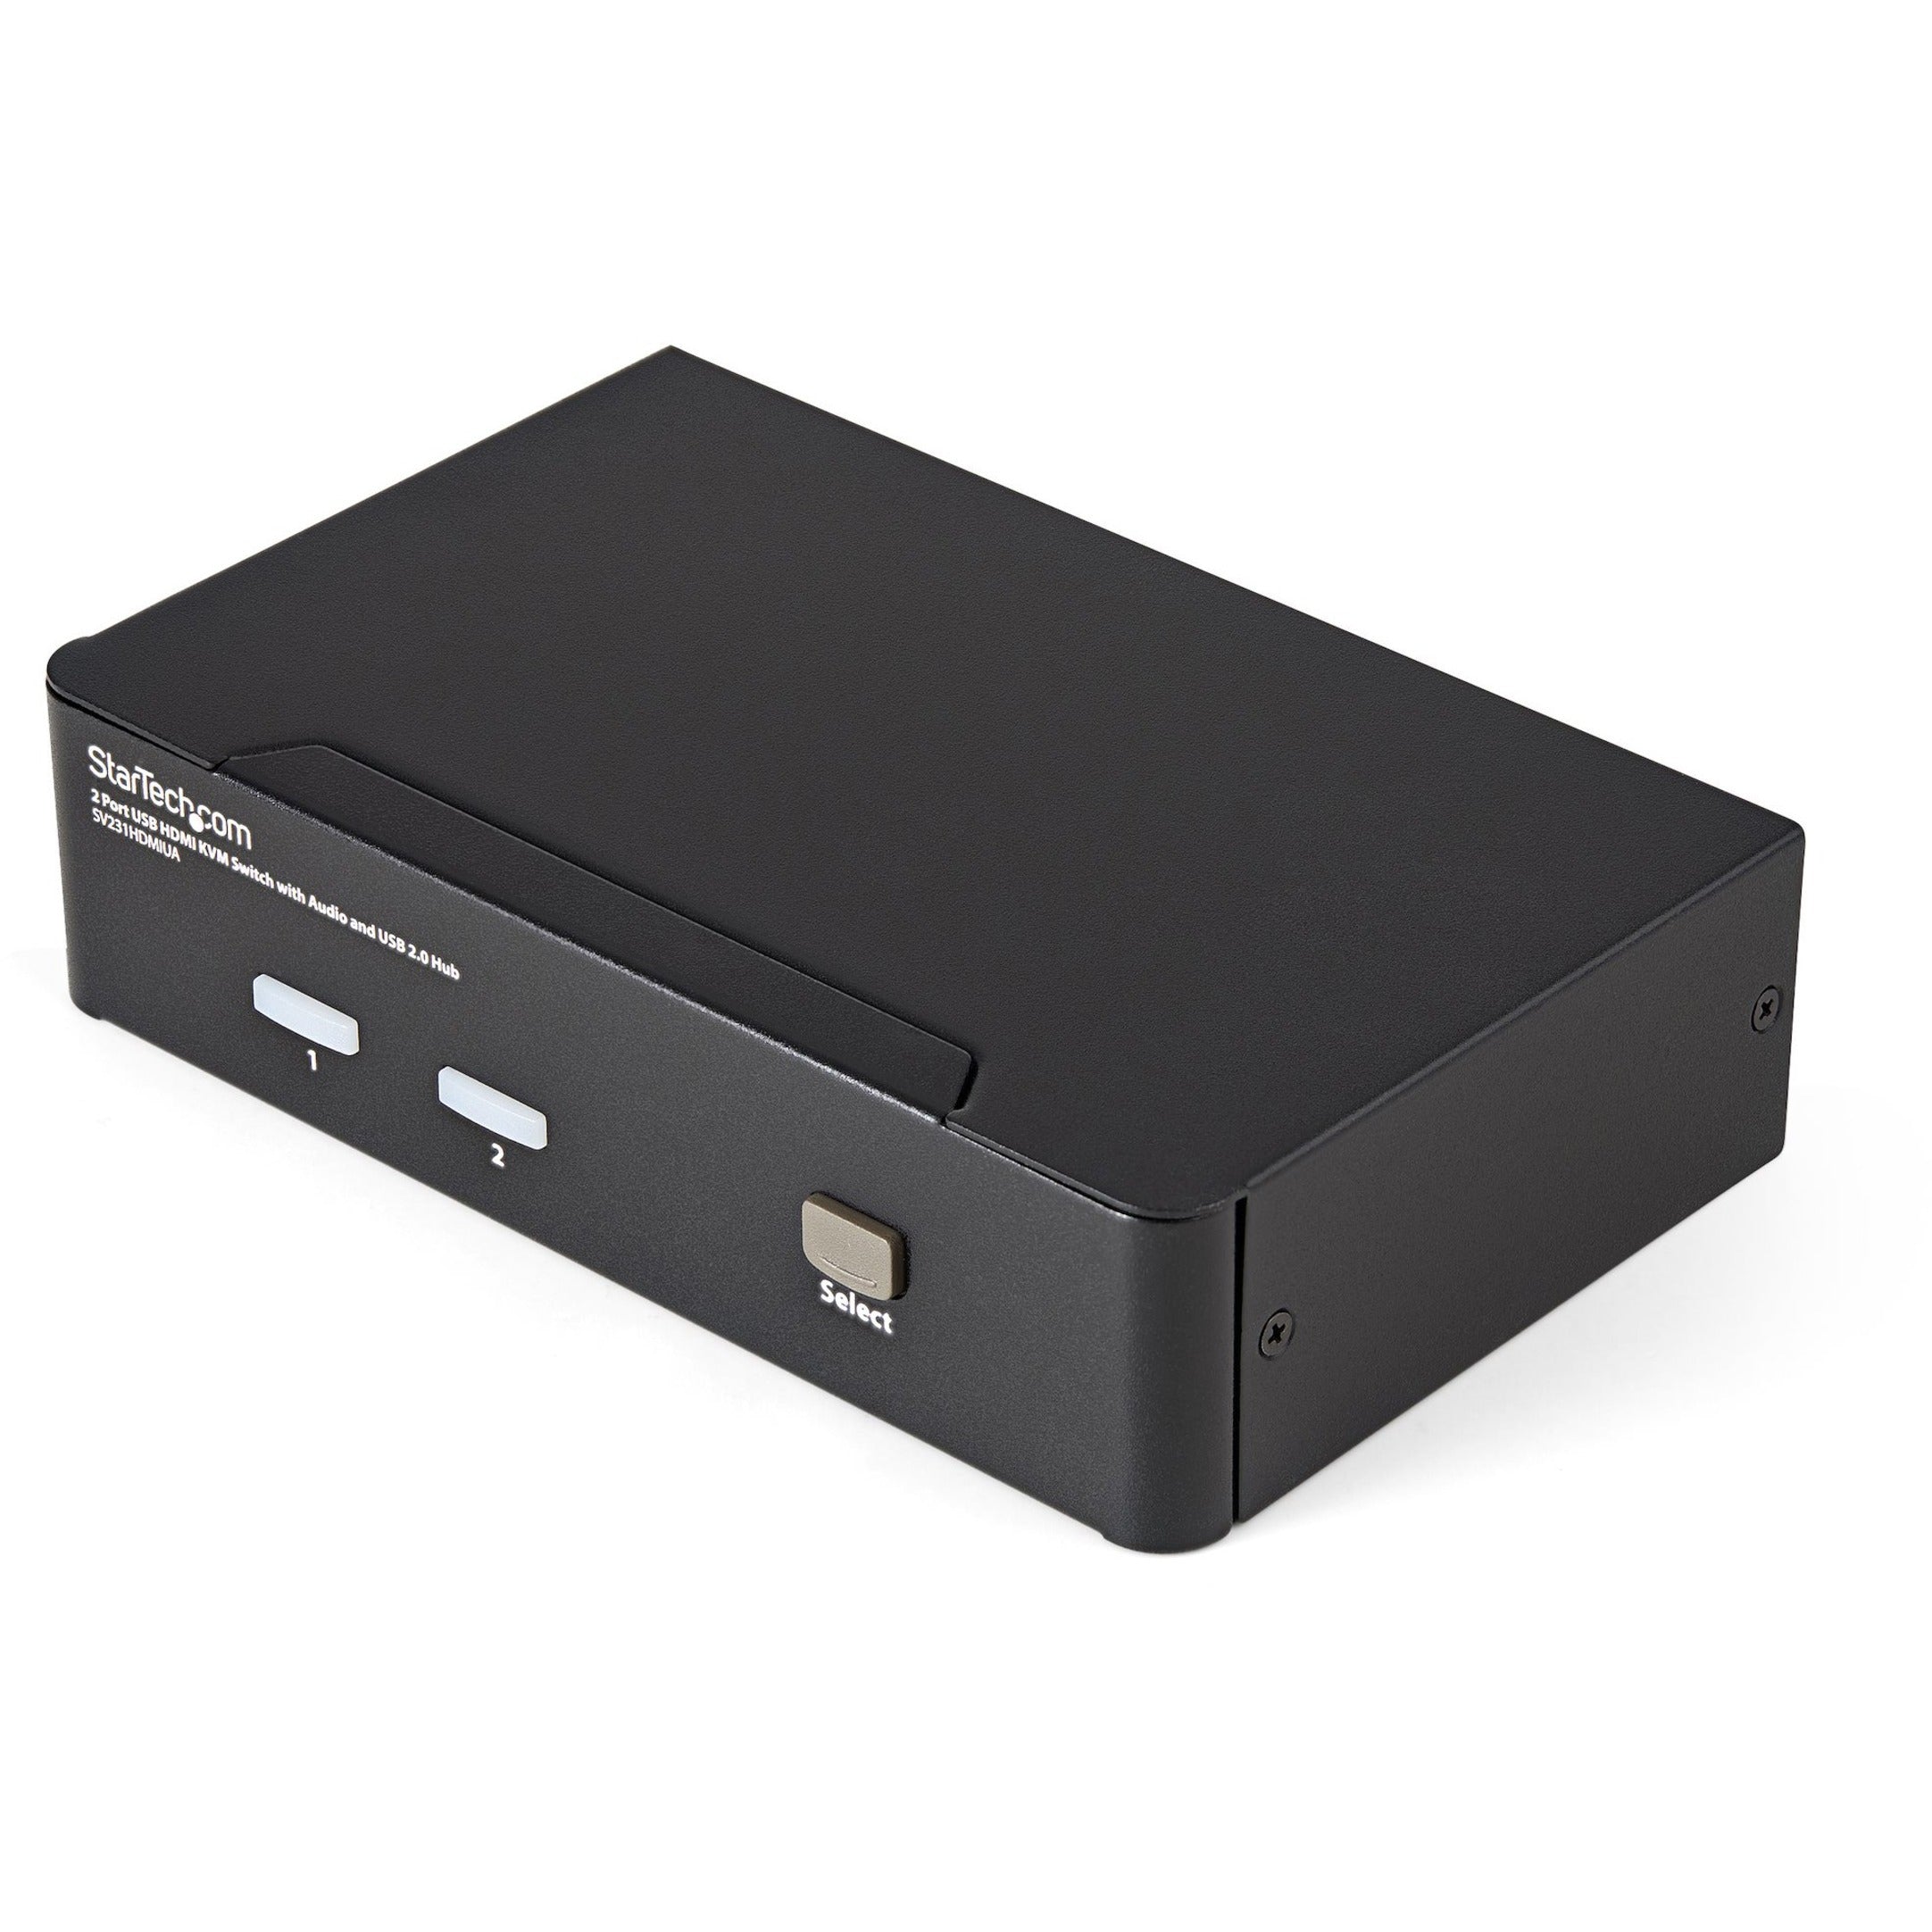 星特科技SV231HDMIUA 2端口USB HDMI KVM切换器与音频和USB 2.0集线器，共享外设和显示器，游戏机和PC之间 品牌名称：星特科技